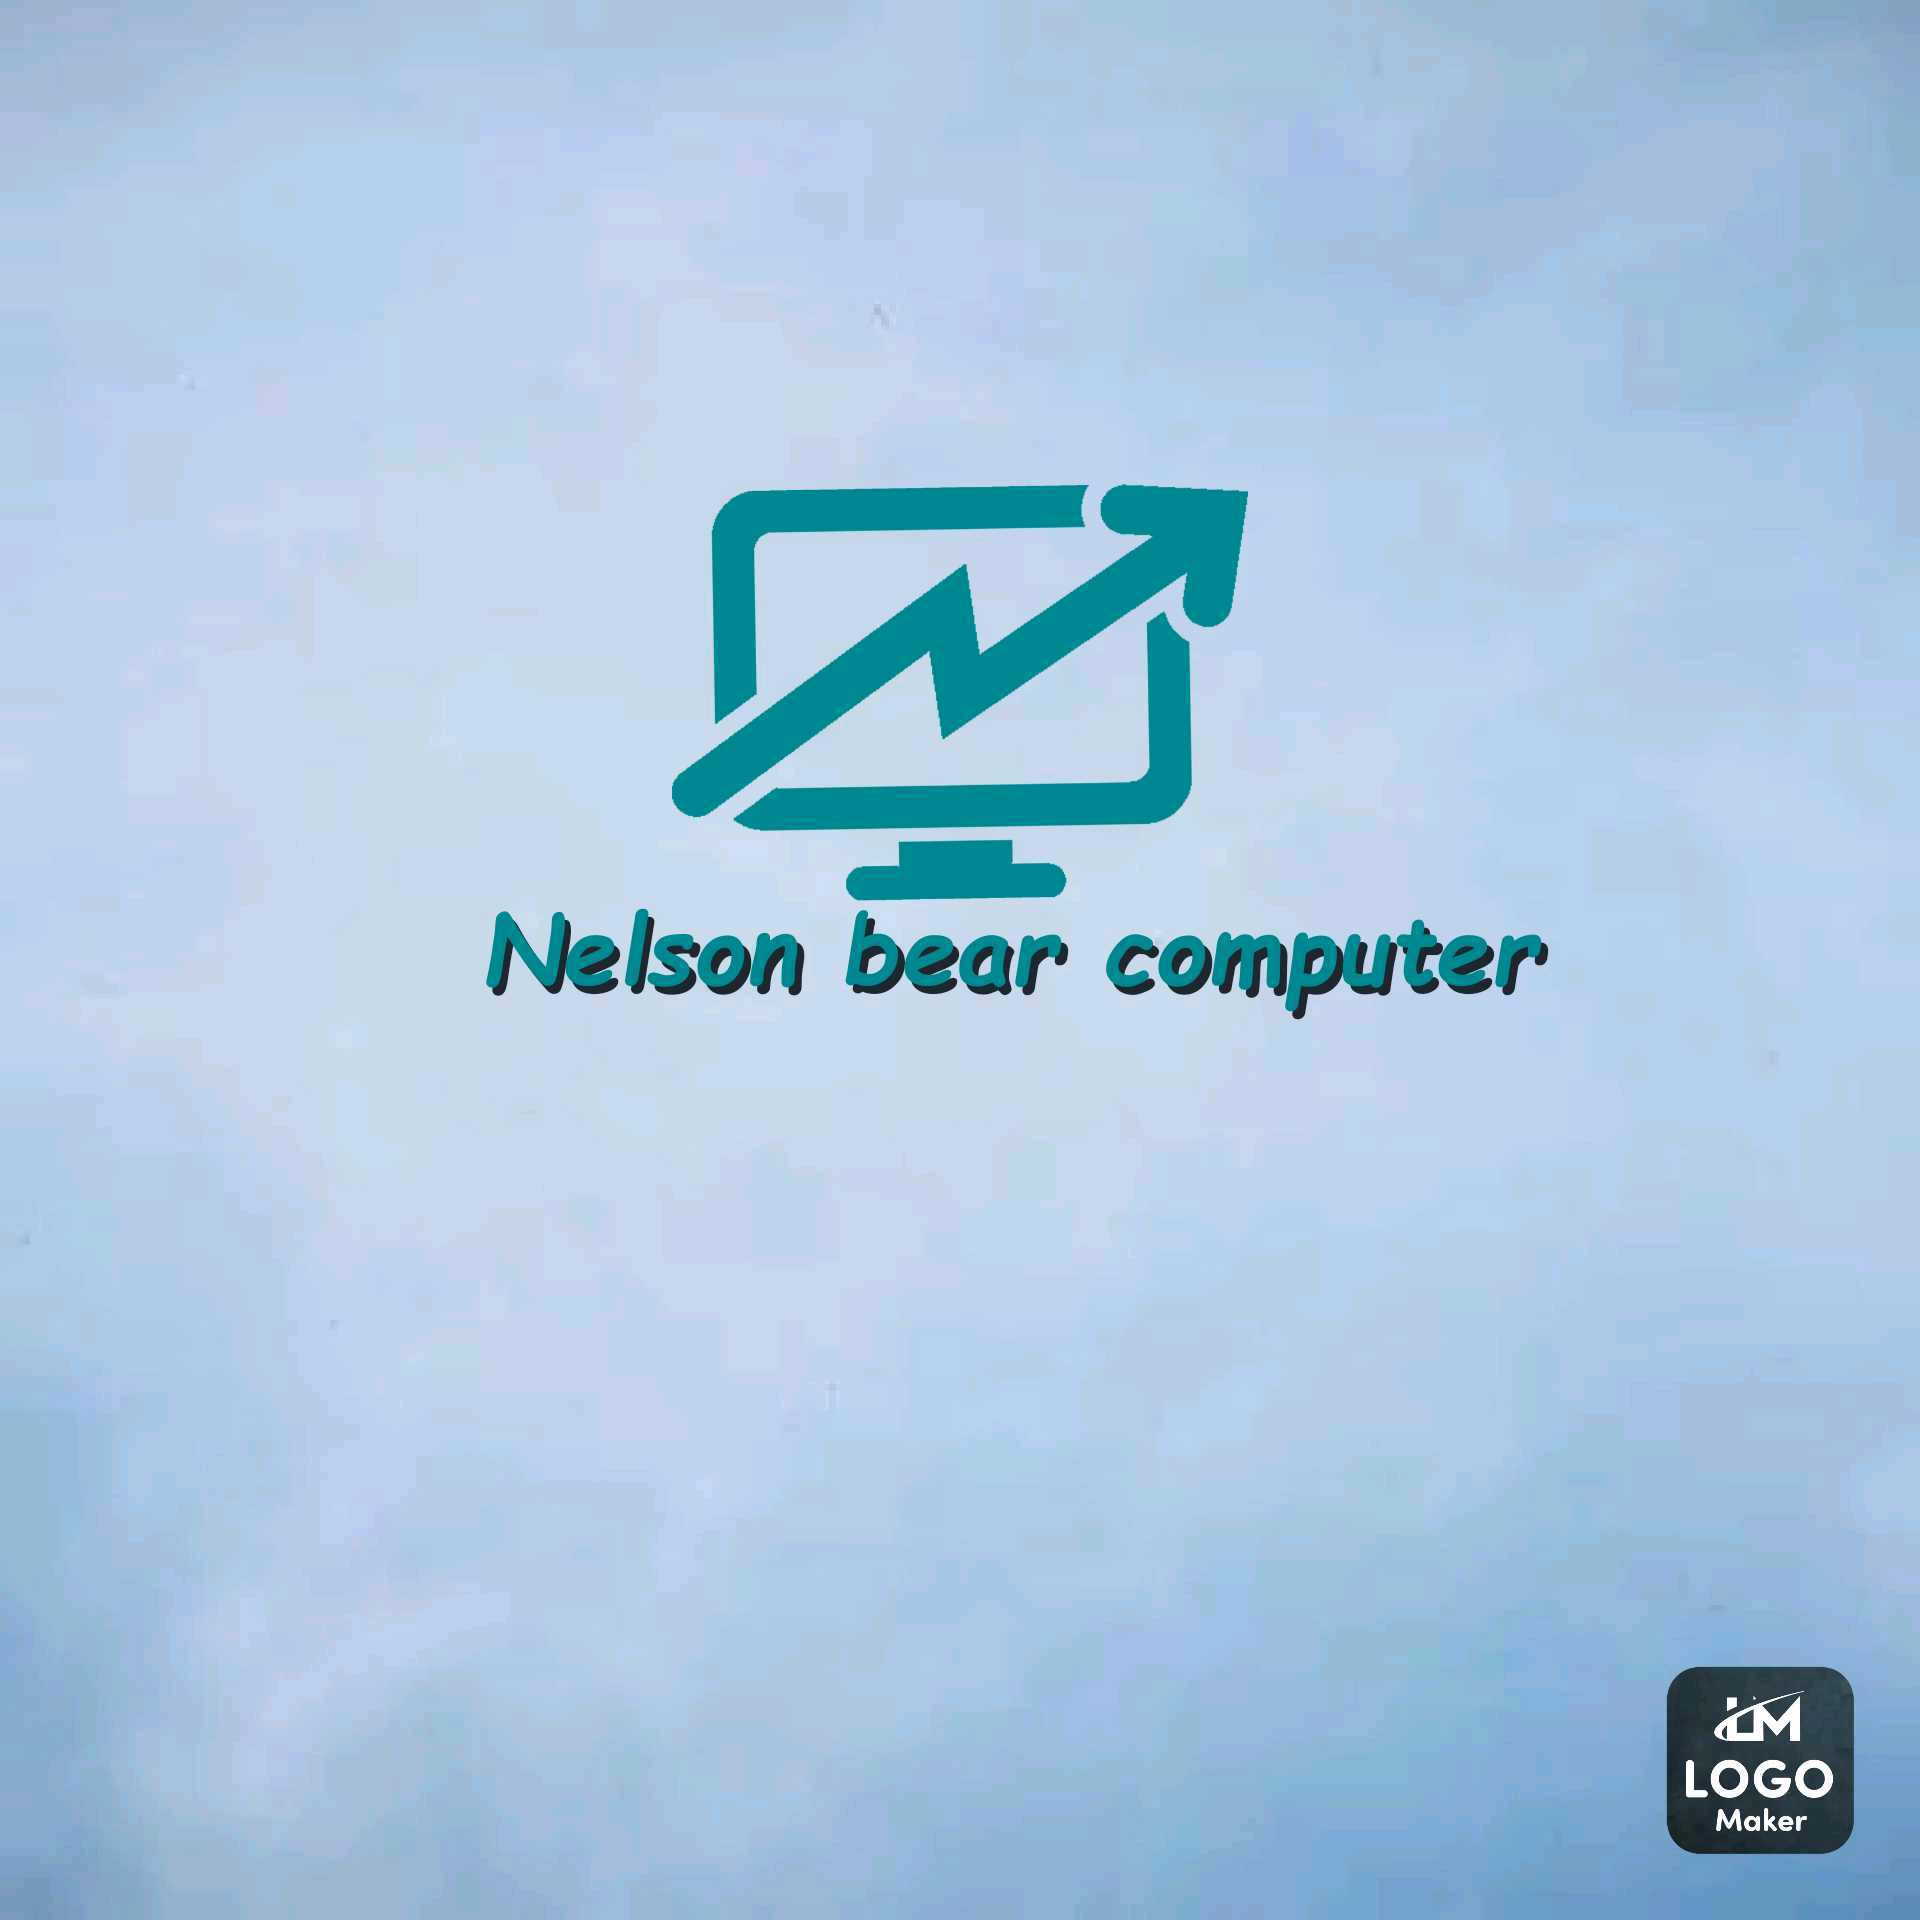 Nelson bear computer